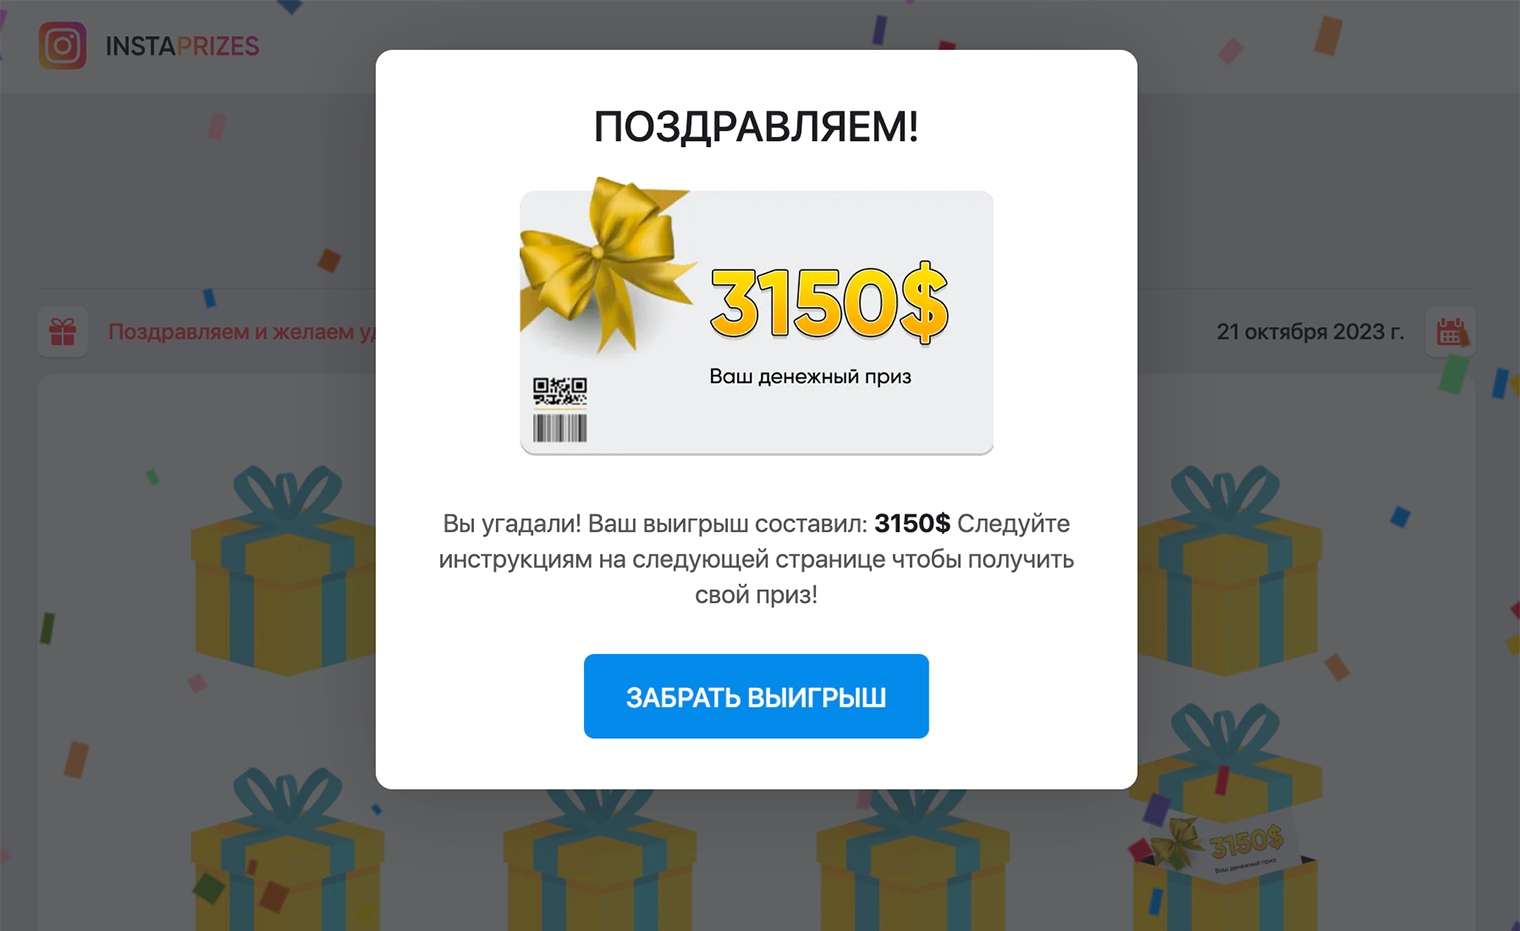 Жене «повезло»: заработала почти триста тысяч рублей